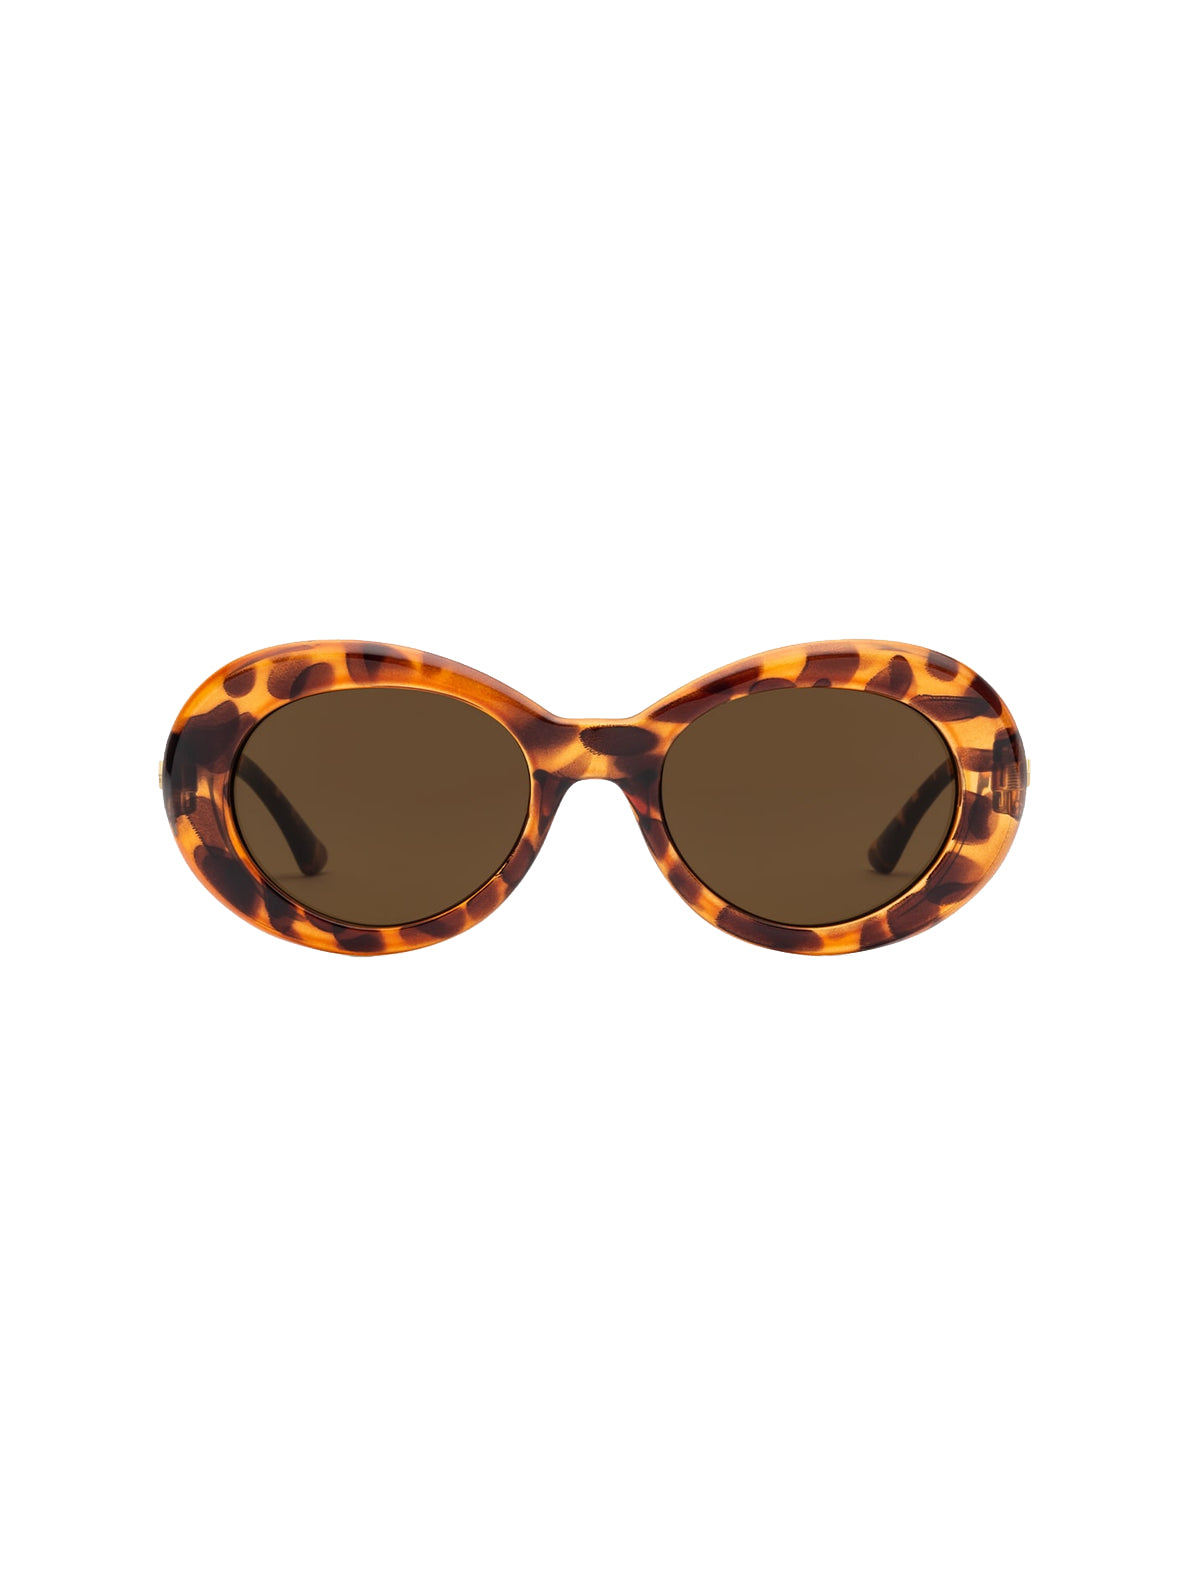 Volcom Stoned Sunglasses GlossTortoise Bronze